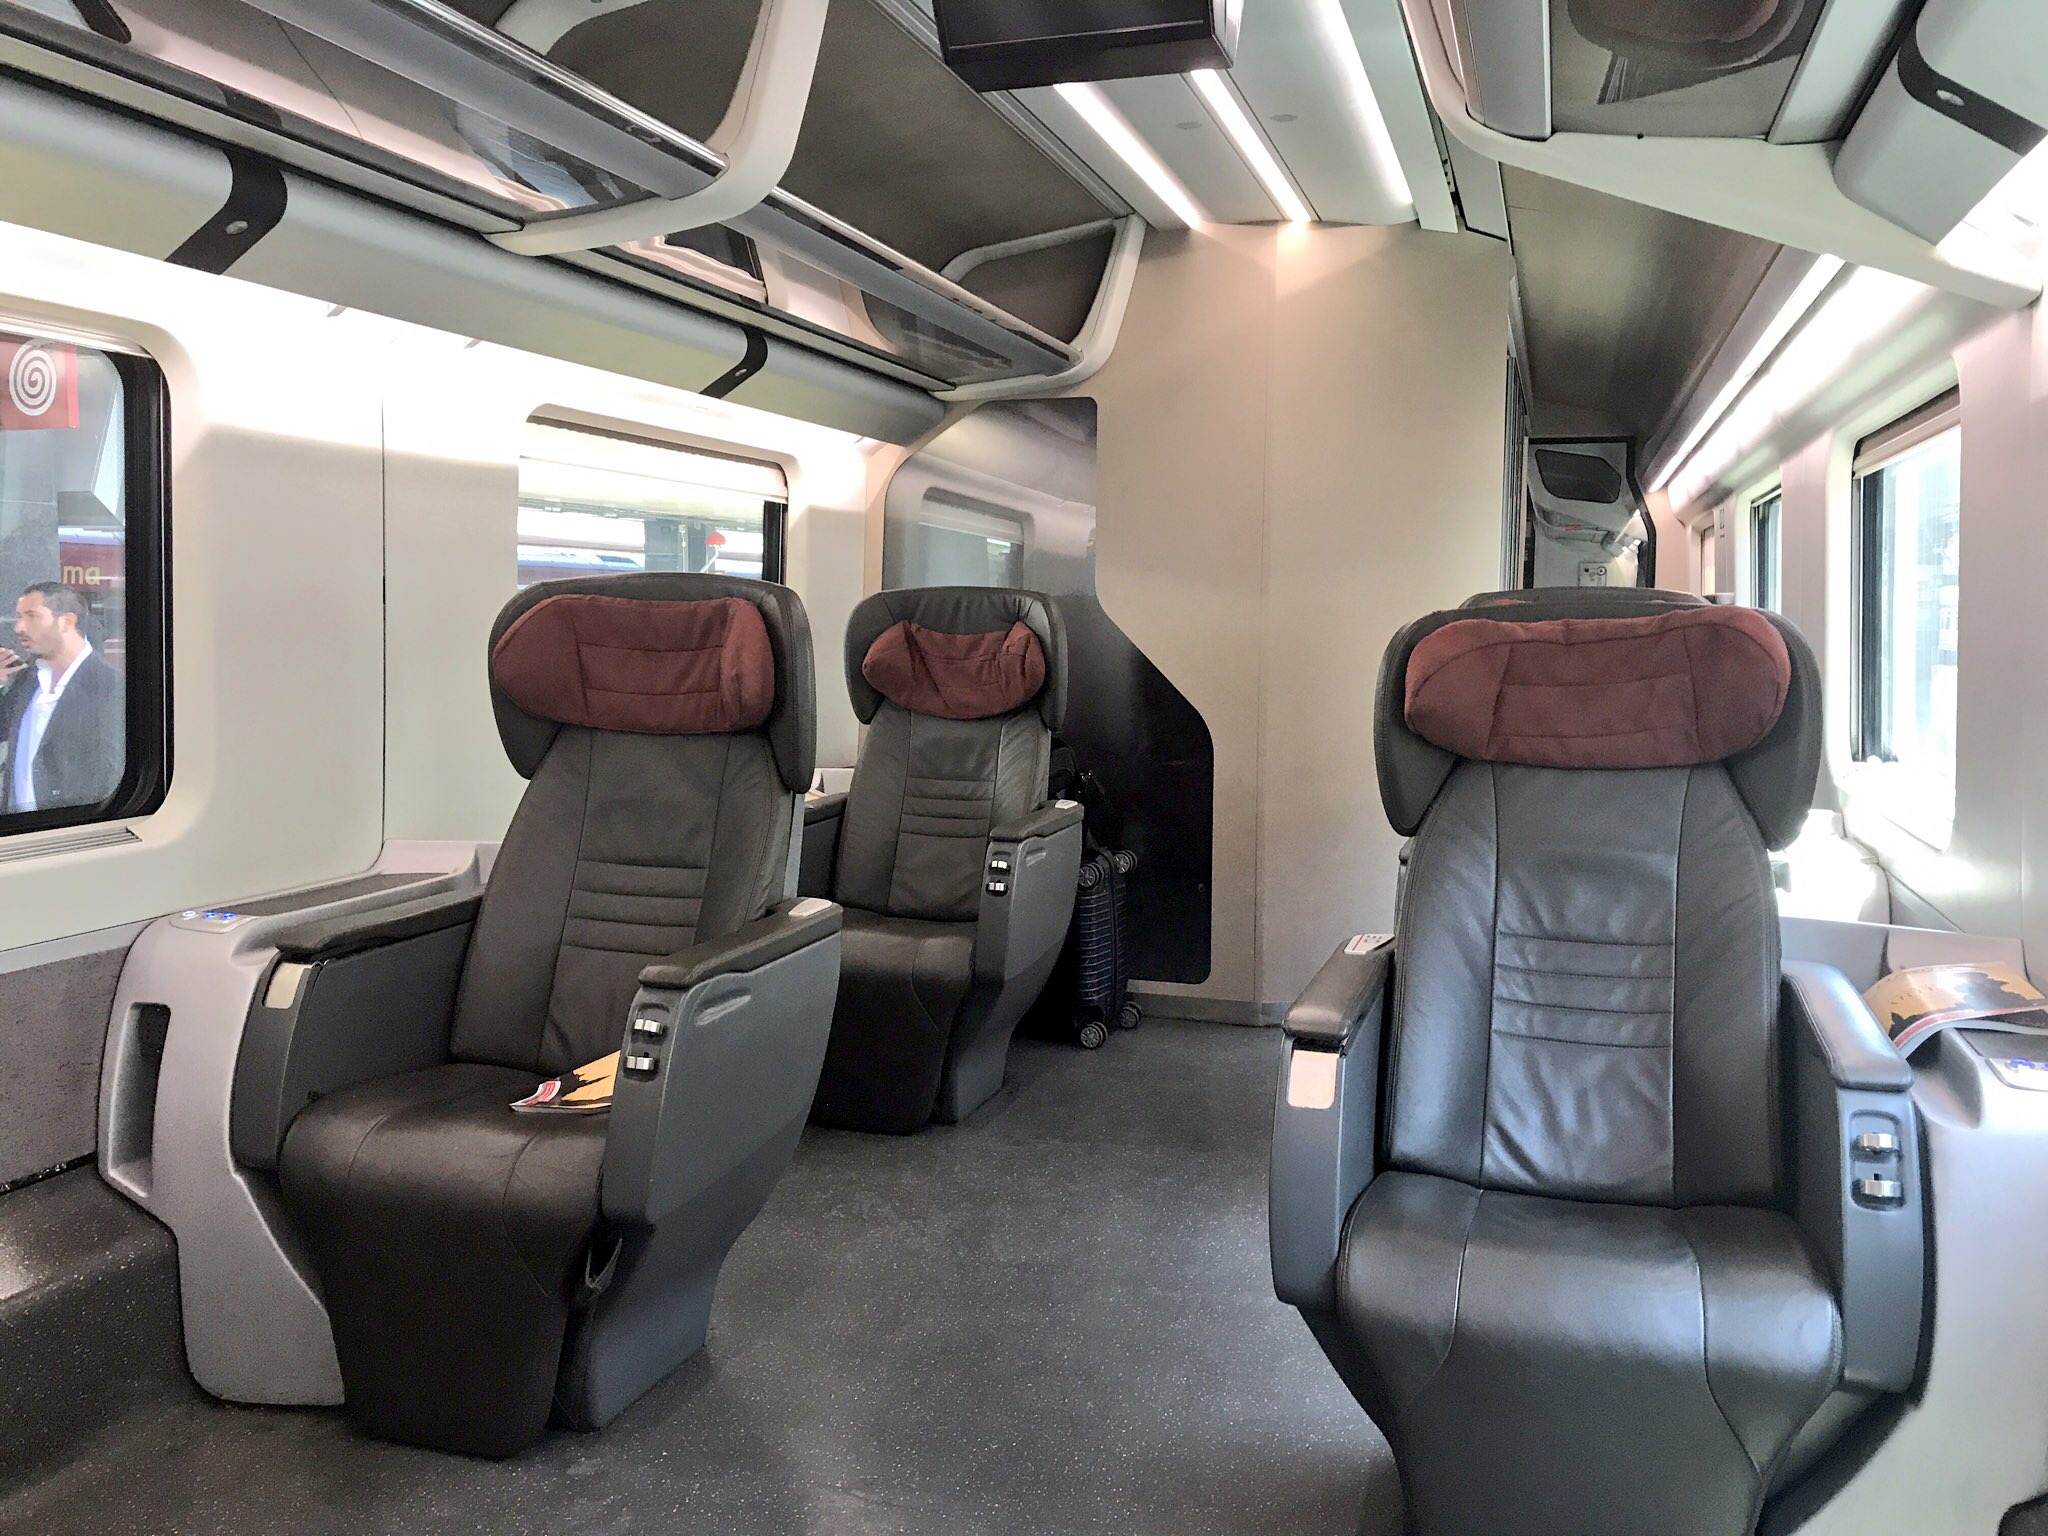 Trenitalia Executive Class Original Interior